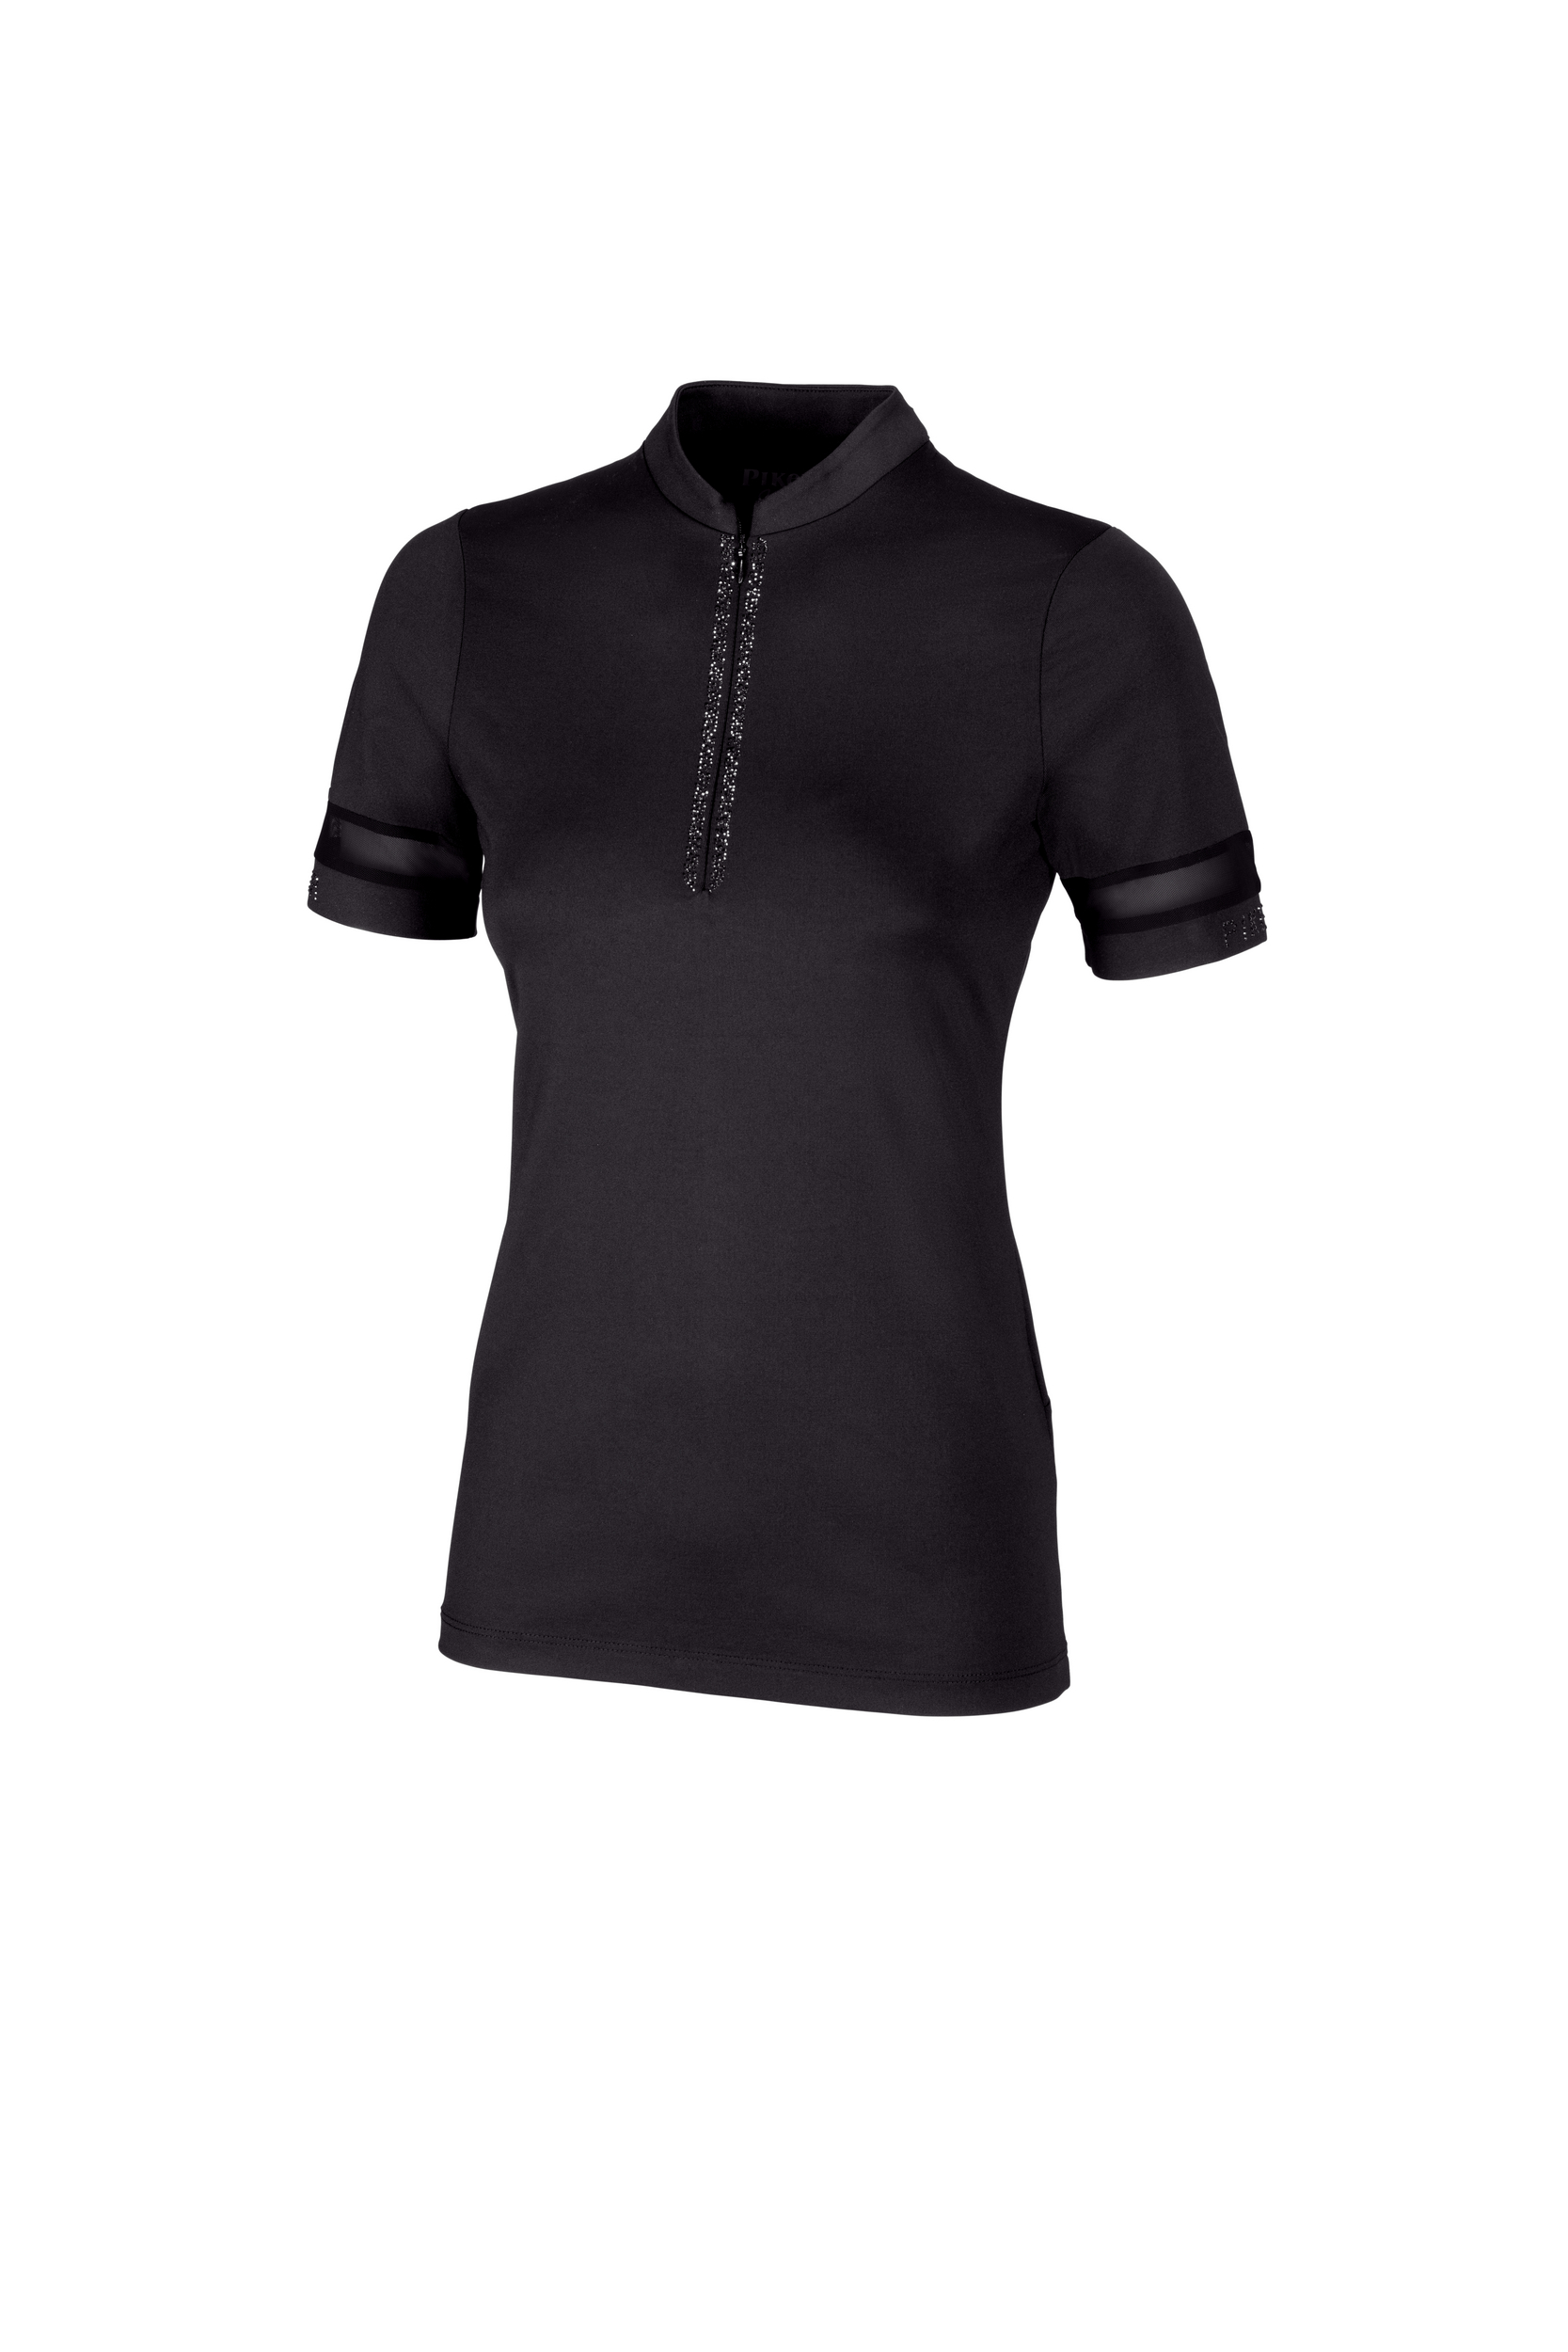 PIKEUR Damen Zip Shirt Kurzarm 5210 Selection 24 - black - 38 - 3